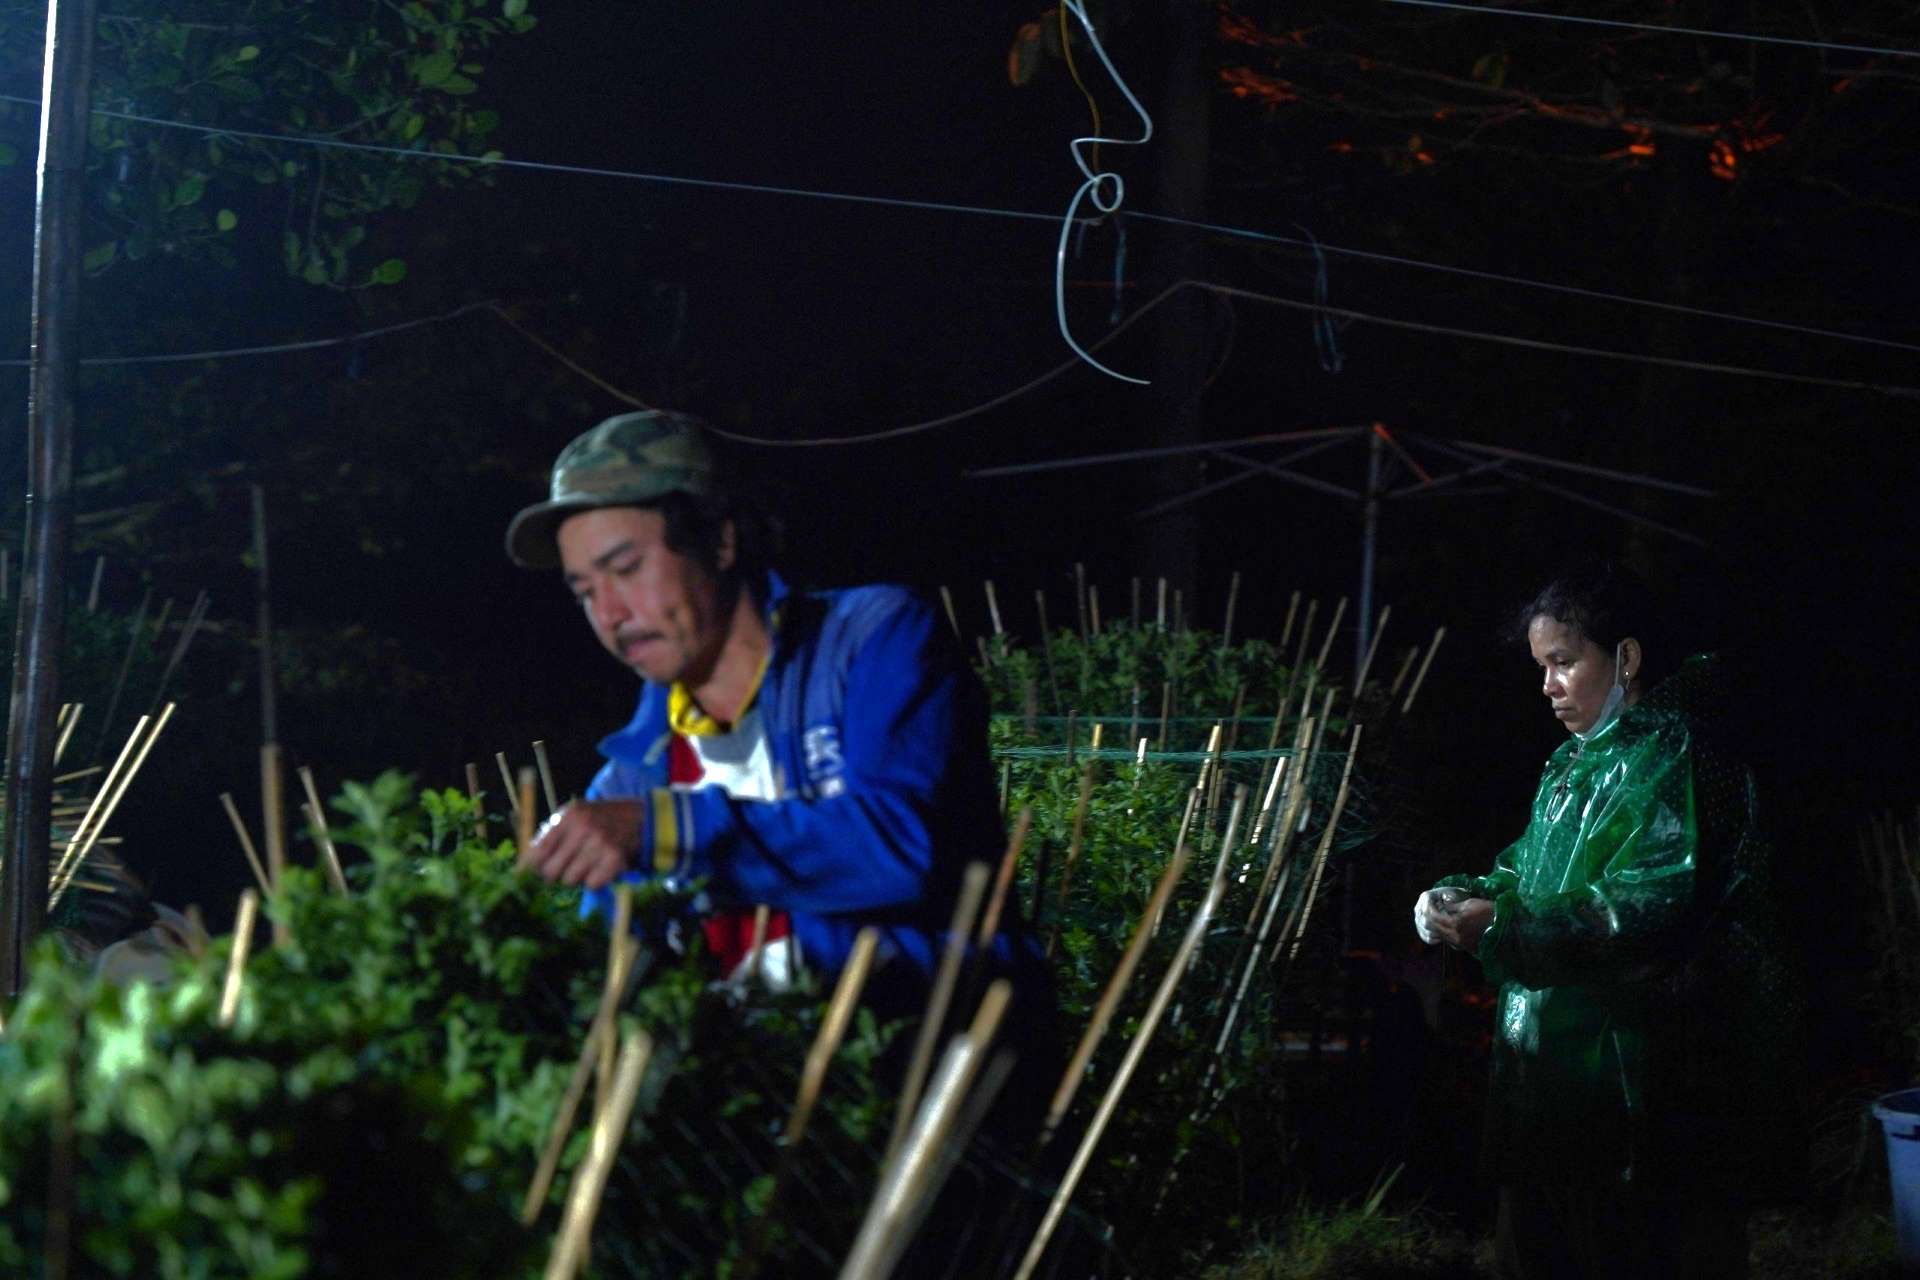 Anh Nguyễn Văn Quang cùng vợ thắp điện kiểm tra, cố định lại hình dáng của chậu hoa.